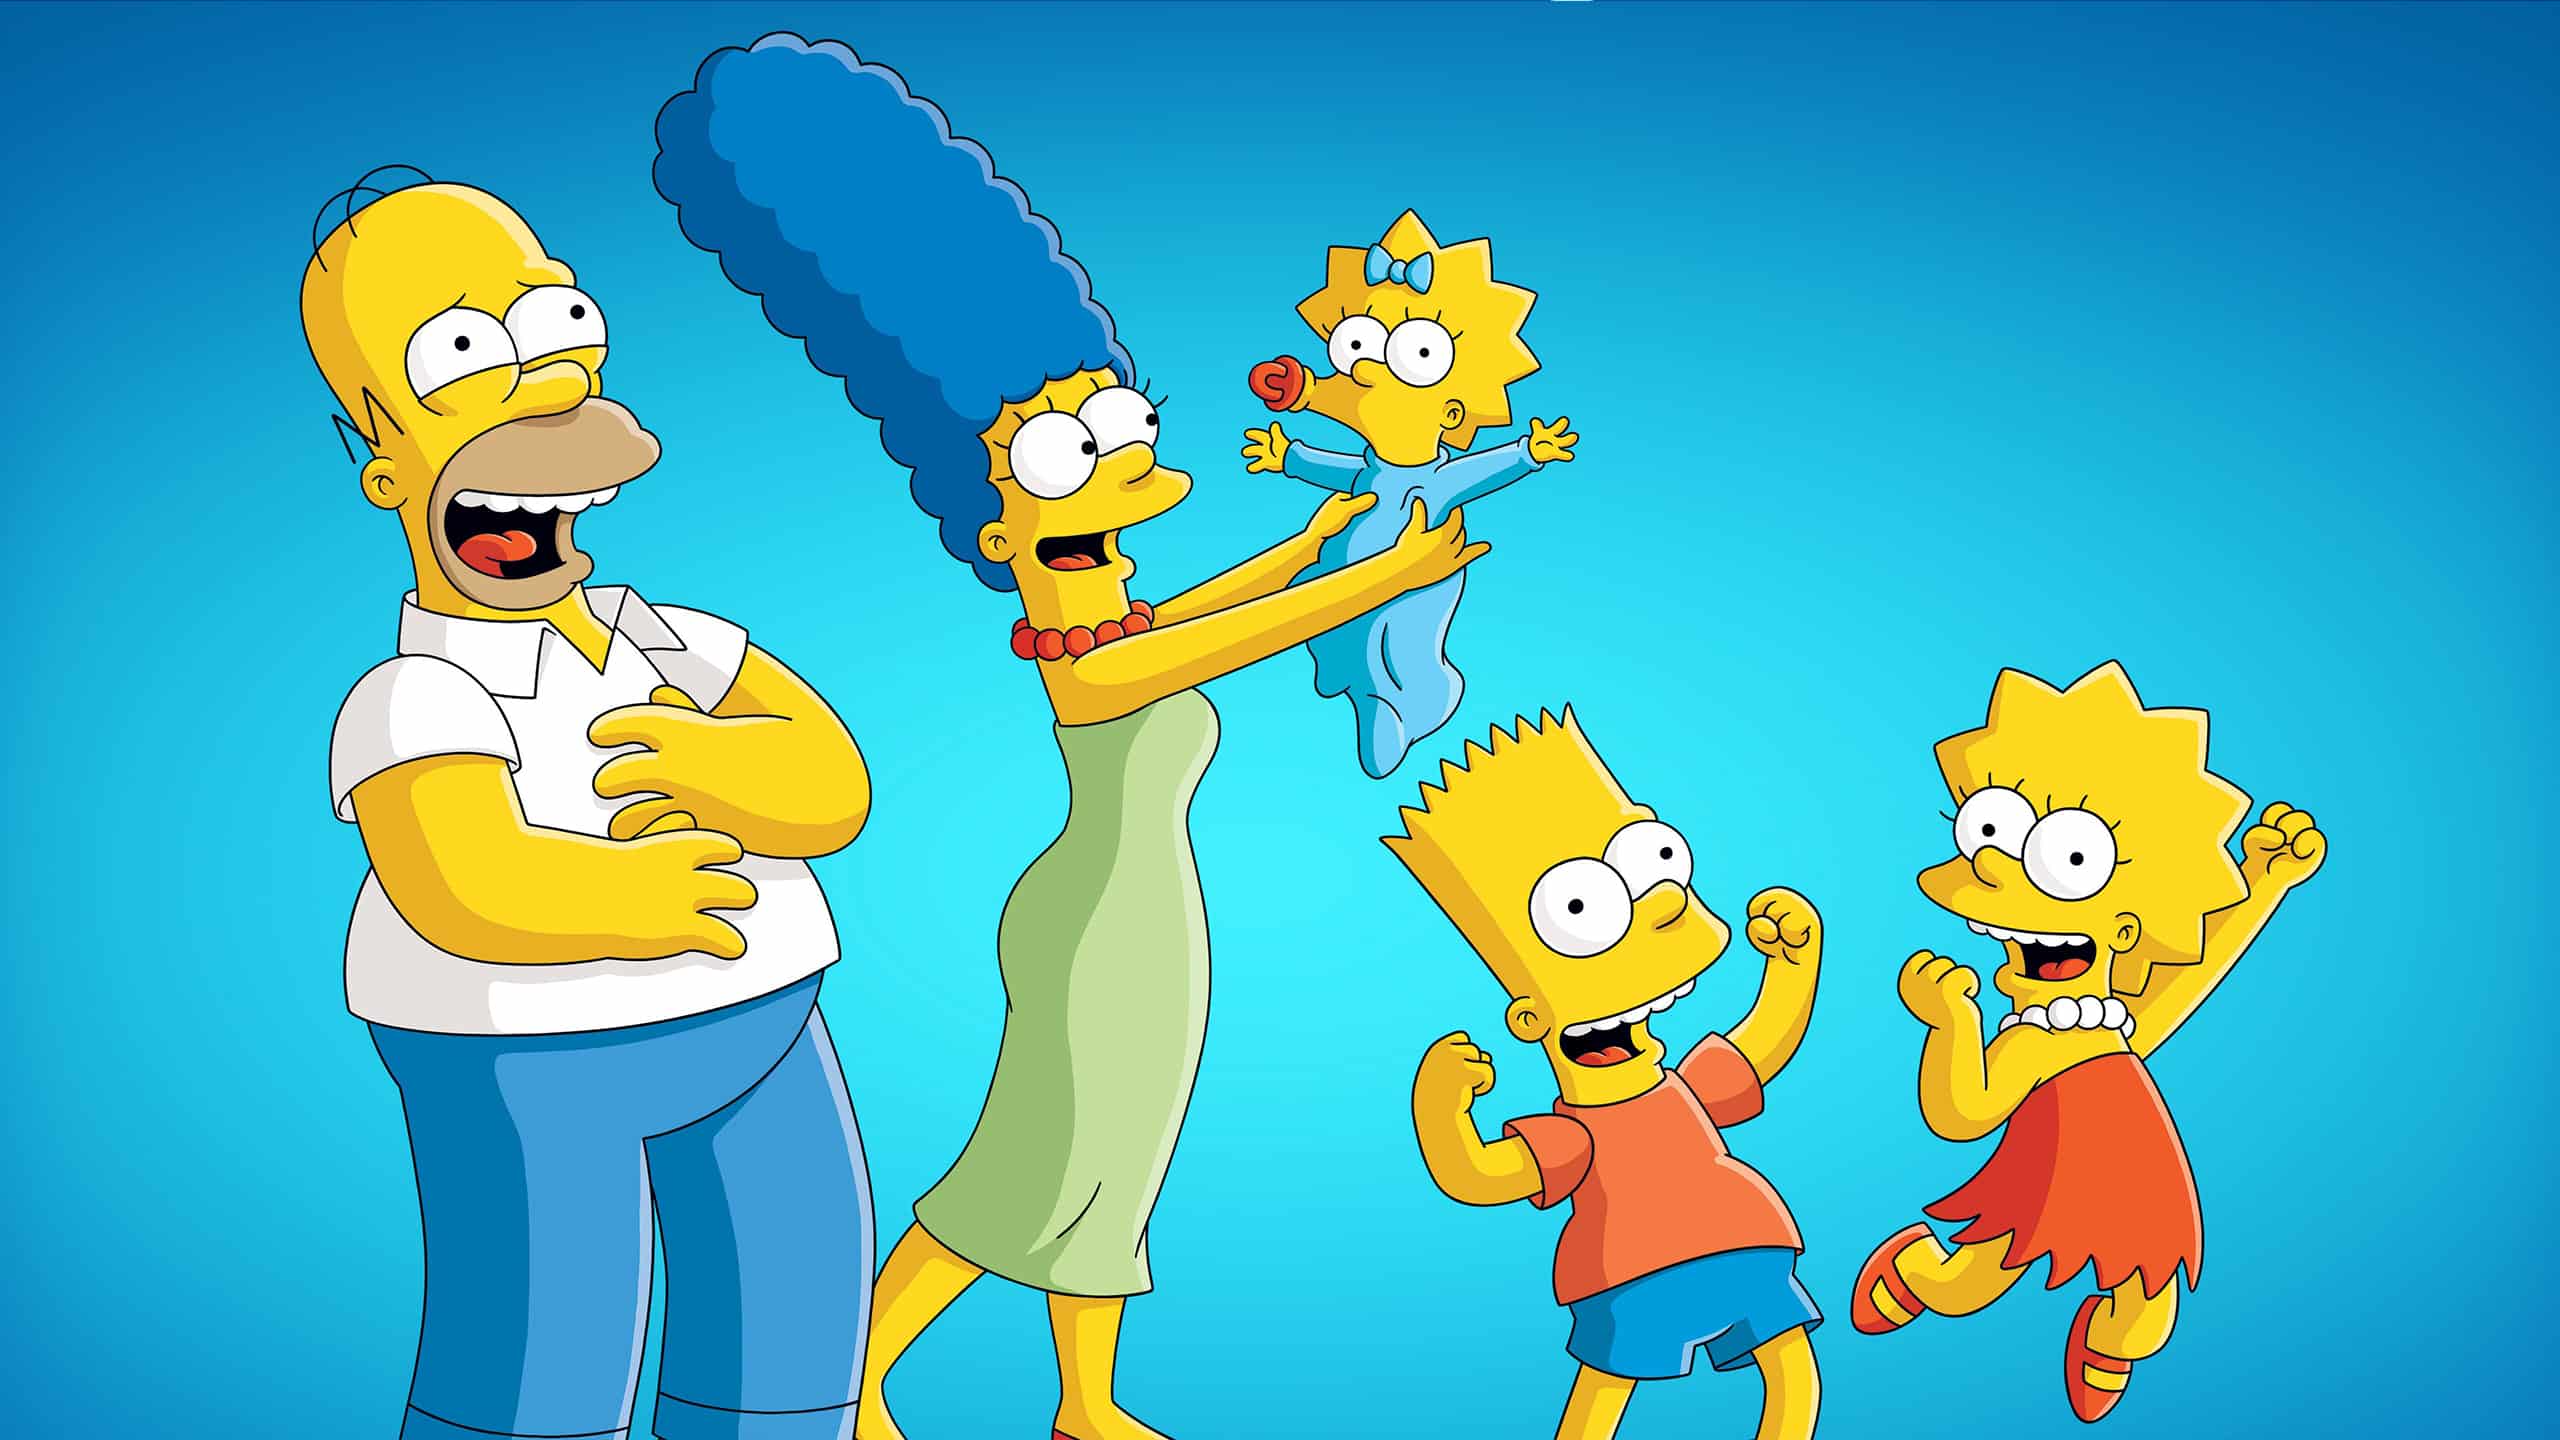 La famille Simpson debout et super heureuse. Homer rigole, Marge fait sauter Maggie et les enfants sautent de joie.